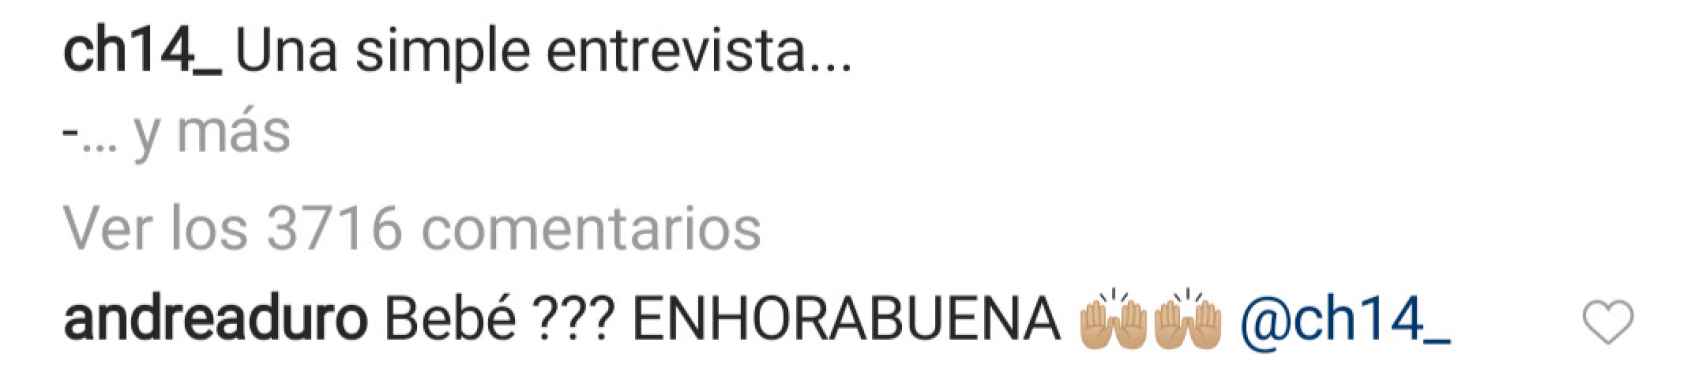 Comentario en el Instagram de Chicharito